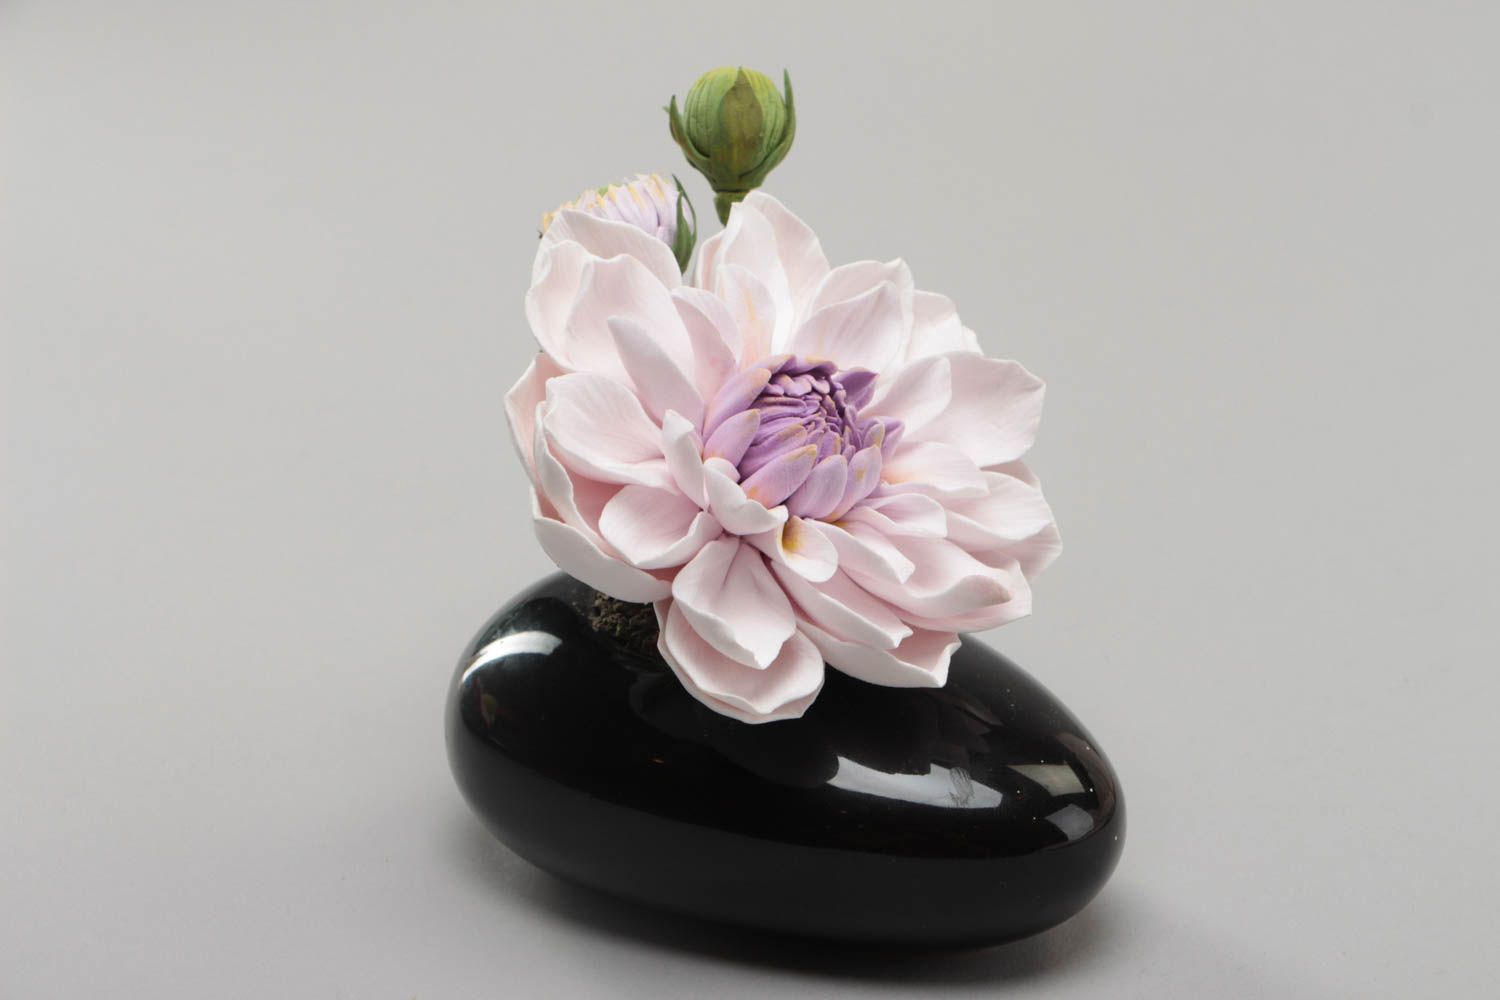 Handmade decorative polymer clay flower for interior design Dahlia photo 2